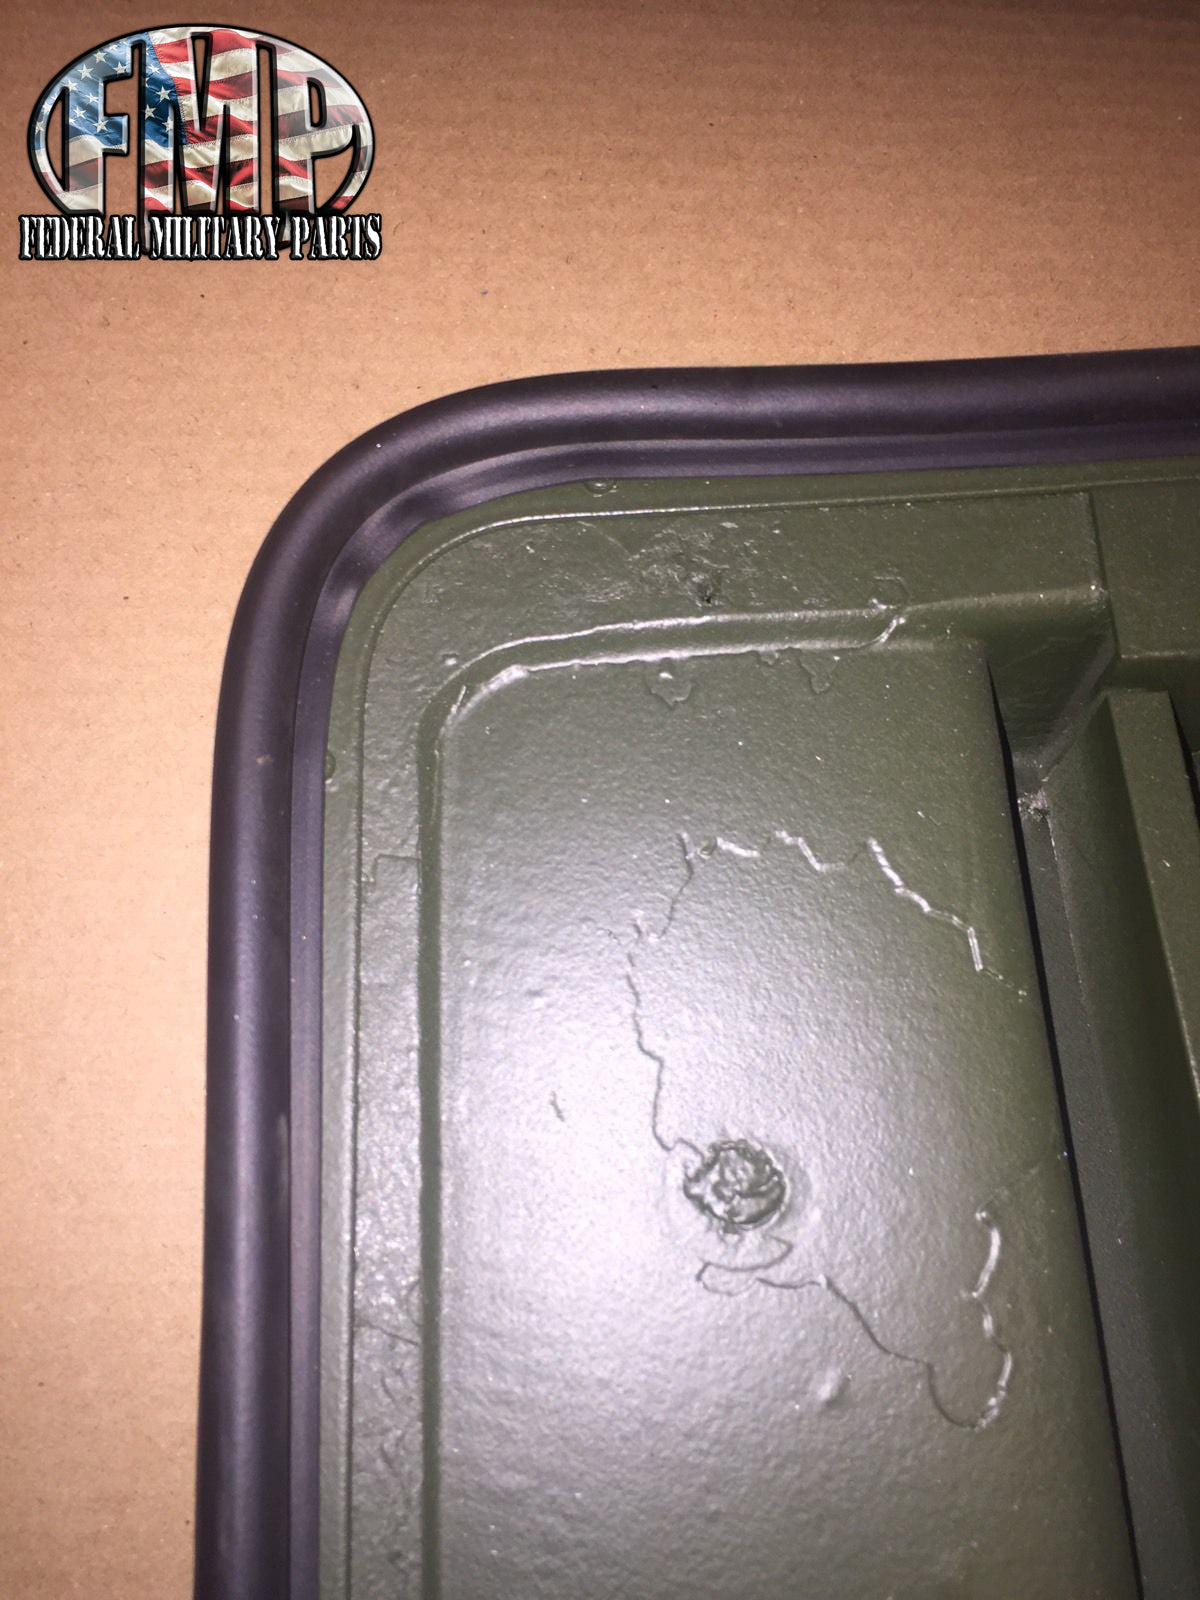 Military humvee x-door gaskets peel and stick seals for m998 hard doors